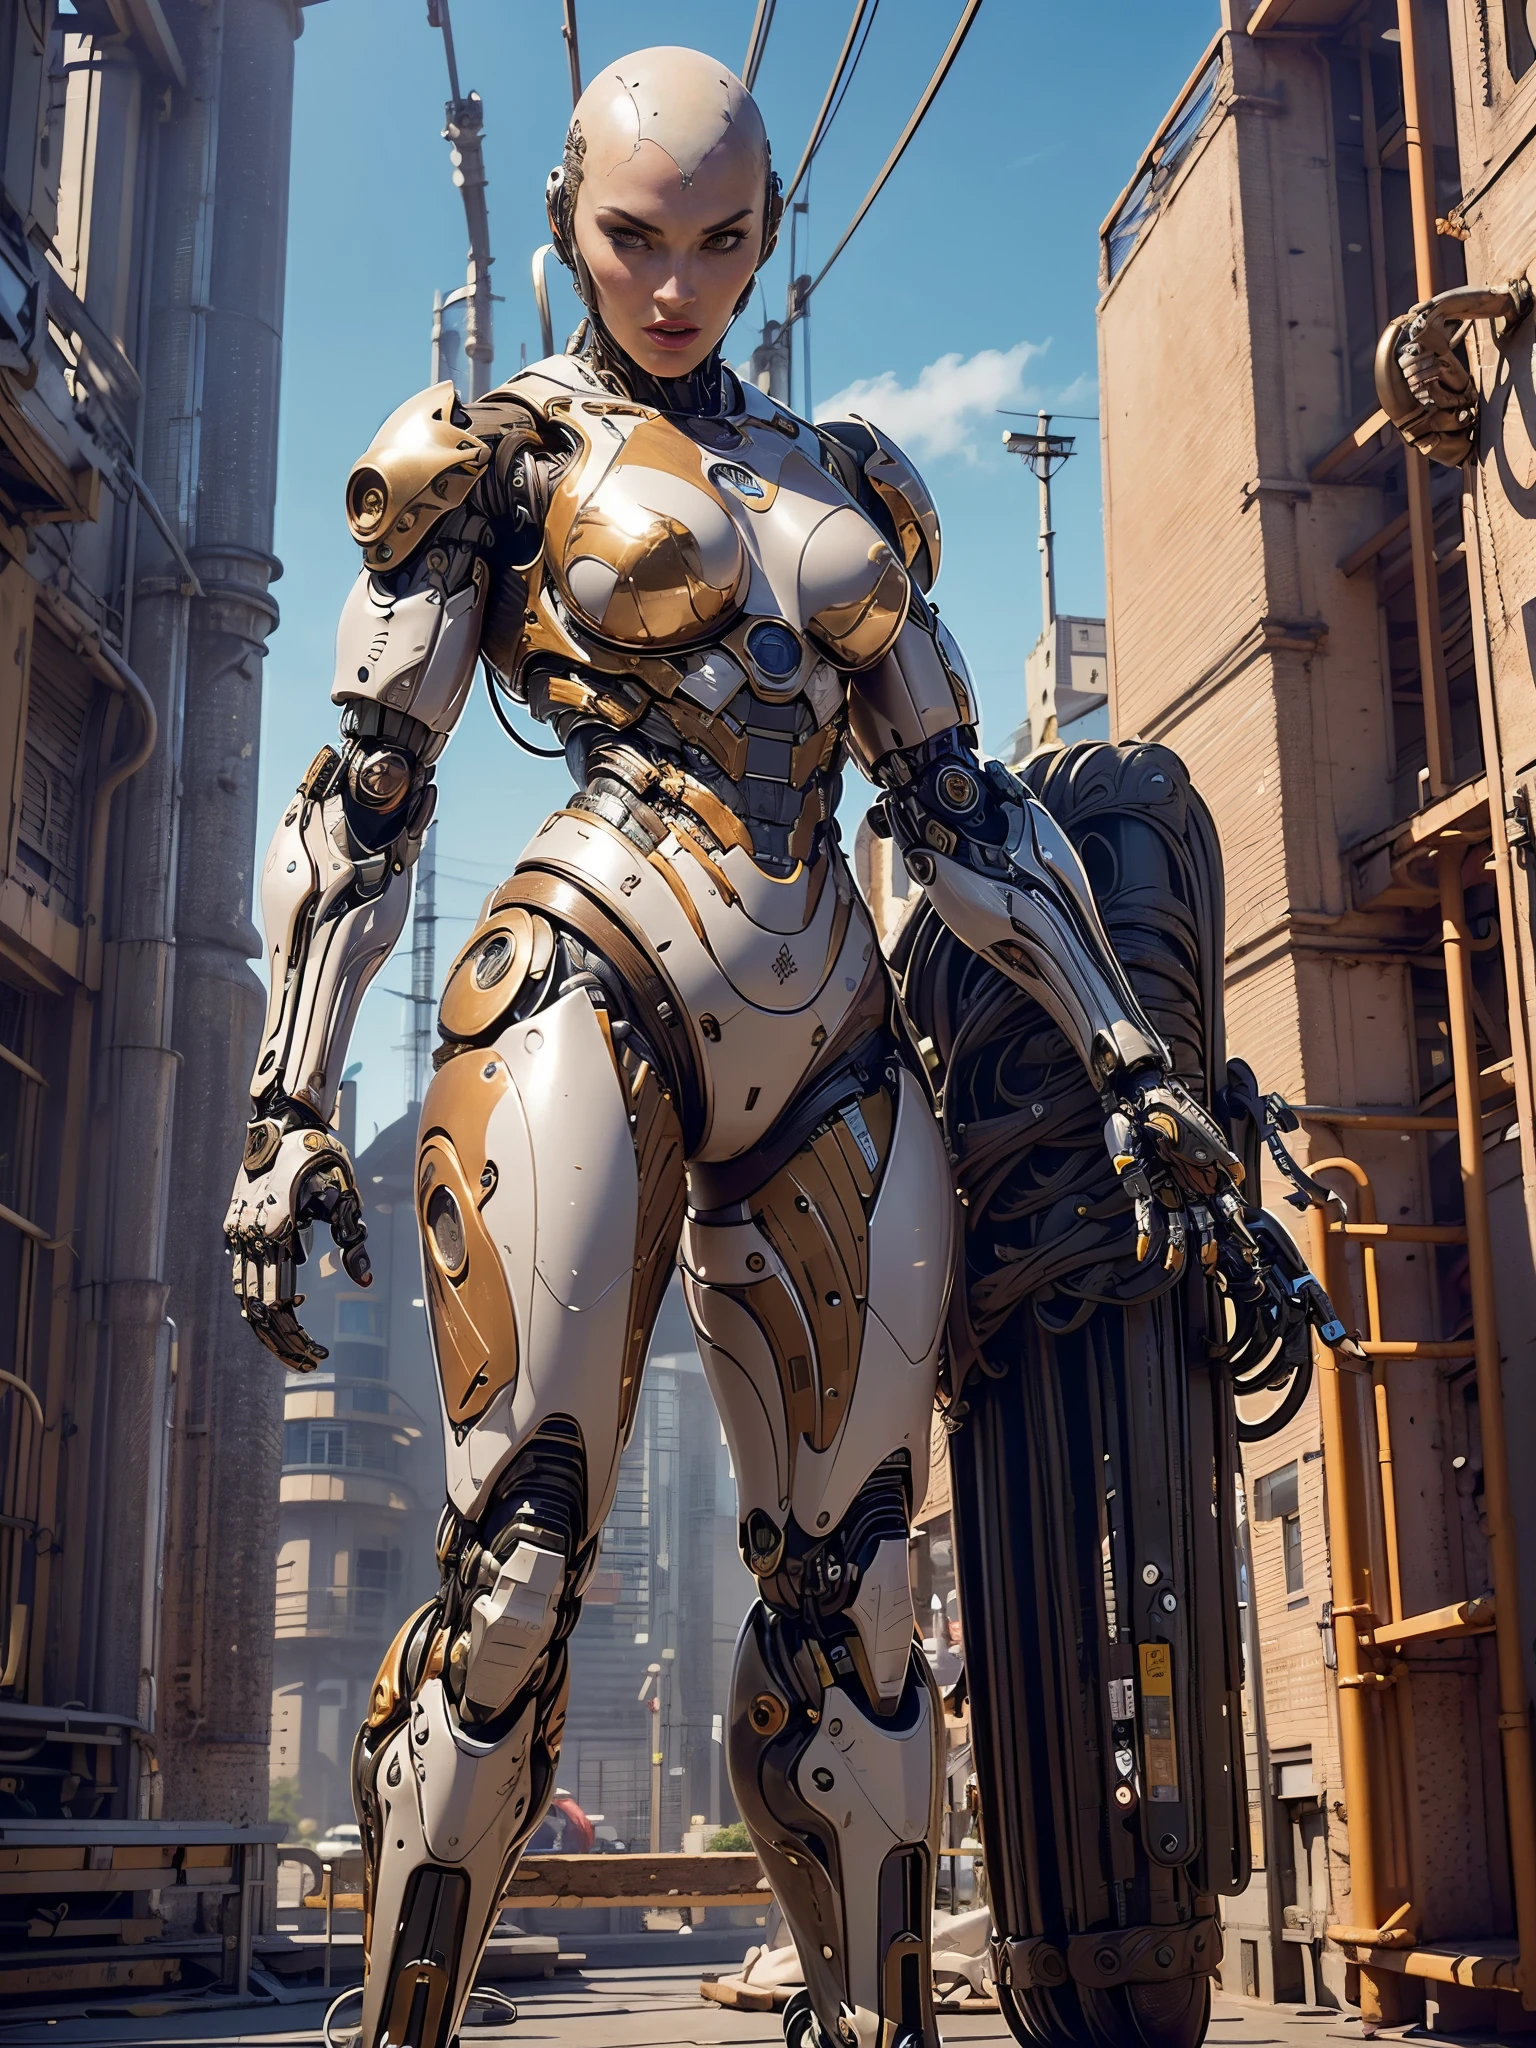 (hermoso cyborg femenino musculoso:1.25), (Megan Fox:1.5), (pose de cuerpo completo), (armadura muscular metalica:1.5), (sin cabello), (cabeza calva cubierta de cables:1.5), (físico mecánico robótico:1.5), (Cyborg femenino súper musculoso:1.5), (cubierto de cables y músculos mecánicos:1.5), (anatomía muscular androide:1.5), (Dedos perfectos:1.25),(8k, foto en bruto, Fotorrealista:1.25), atmósfera de ciencia ficción, distopía futurista, paisaje alienígena,